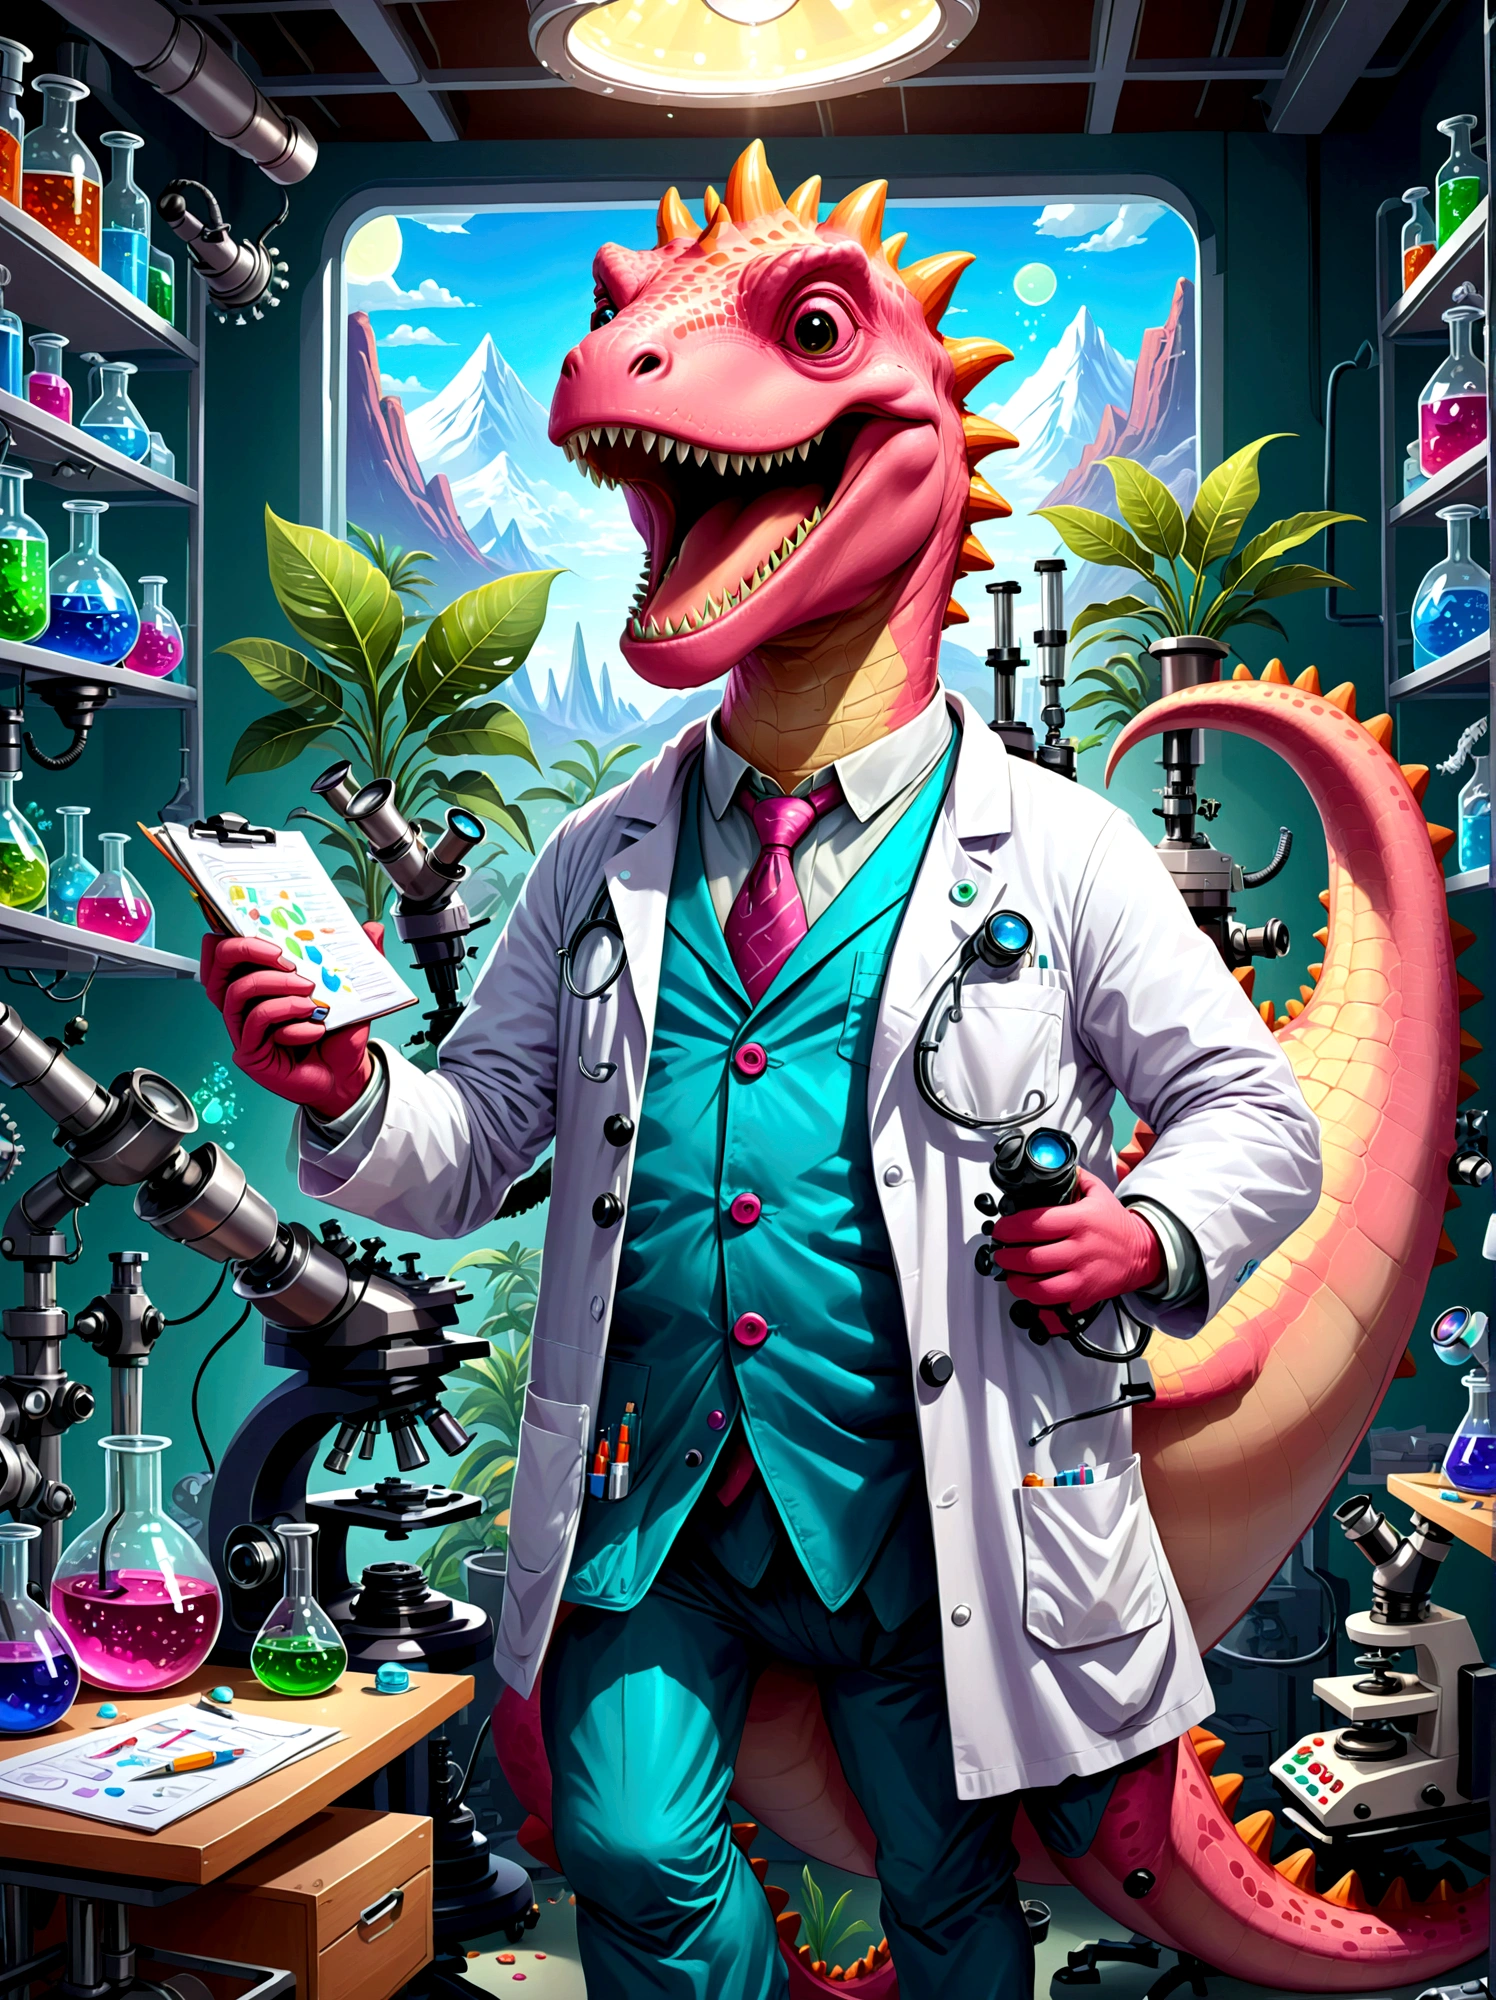 Розовый персонаж-динозавр с широким, зубастая улыбка, одетый как исследователь, Они в лаборатории, окружен научным оборудованием, таким как микроскопы, мензурки, диаграммы и графики. Динозавр одет в лабораторный халат., Защита глаз, и держит в руке планшет, Бумаги разбросаны, указывая на напряженный рабочий день, Помещение лаборатории наполнено светом, исходящим от люминесцентных ламп над головой., Проиллюстрируйте это в мультяшном стиле.